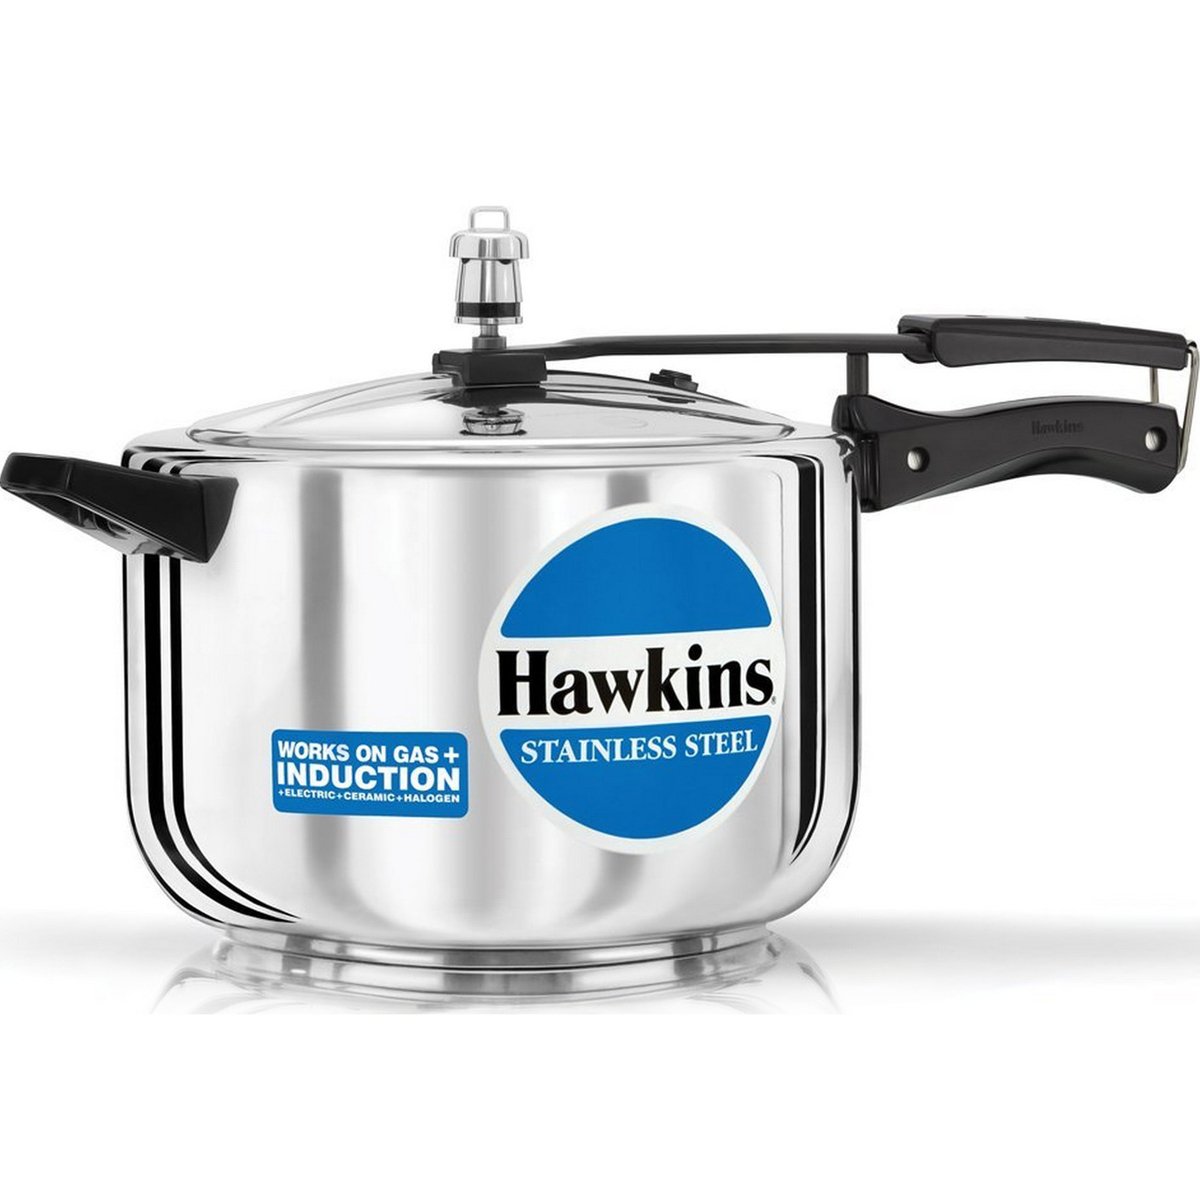 Hawkins Stainless Steel Pressure Cooker B85 8 Ltr